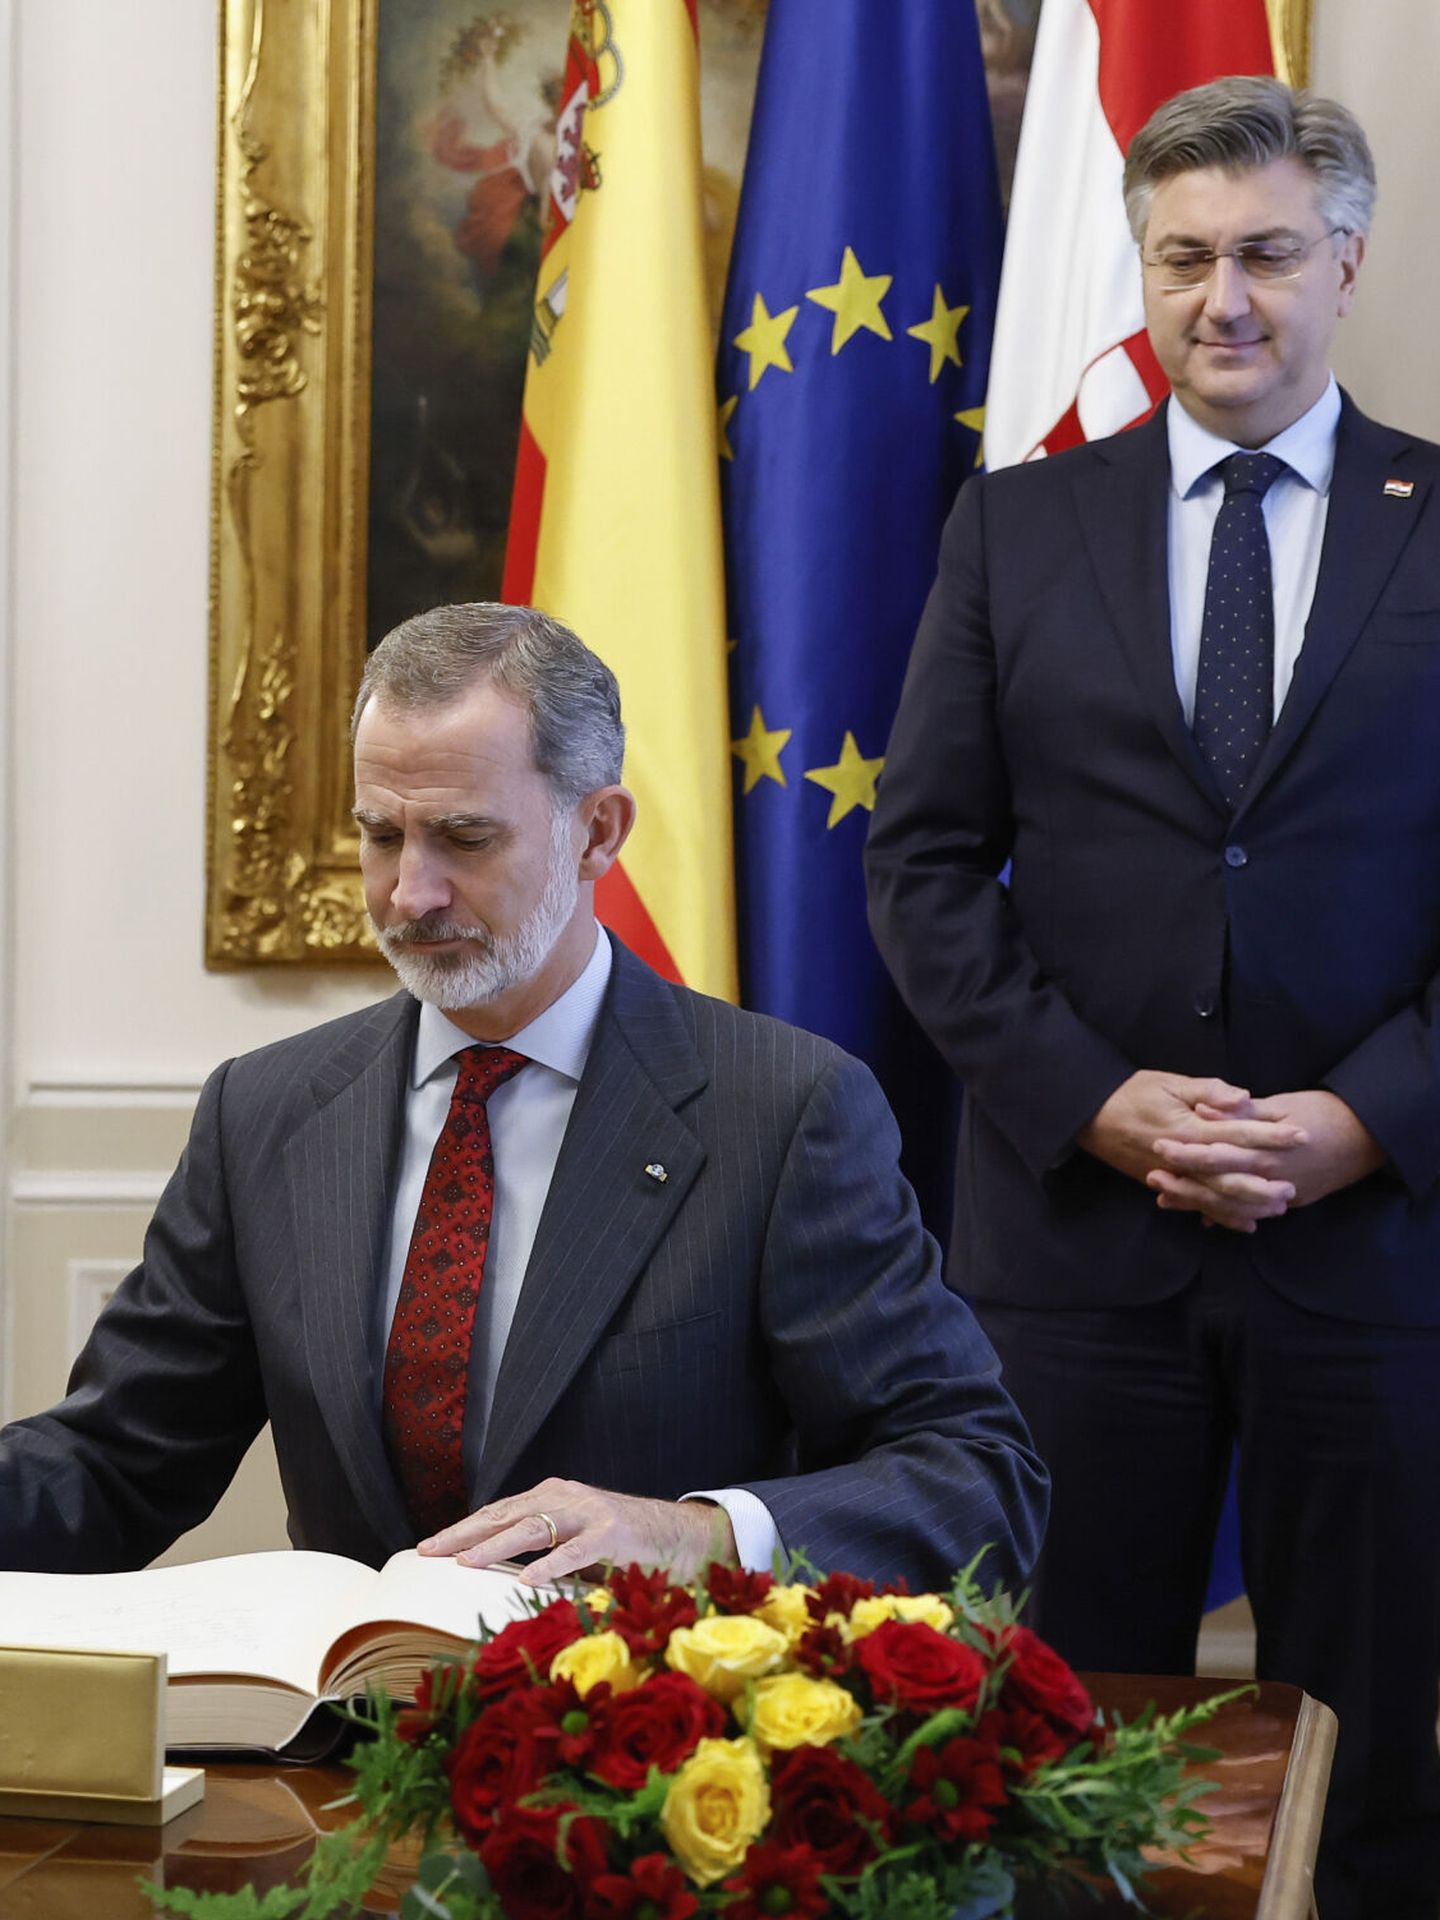 El Rey firma en el libro de honor en presencia del primer ministro croata. (EFE/Chema Moya) 